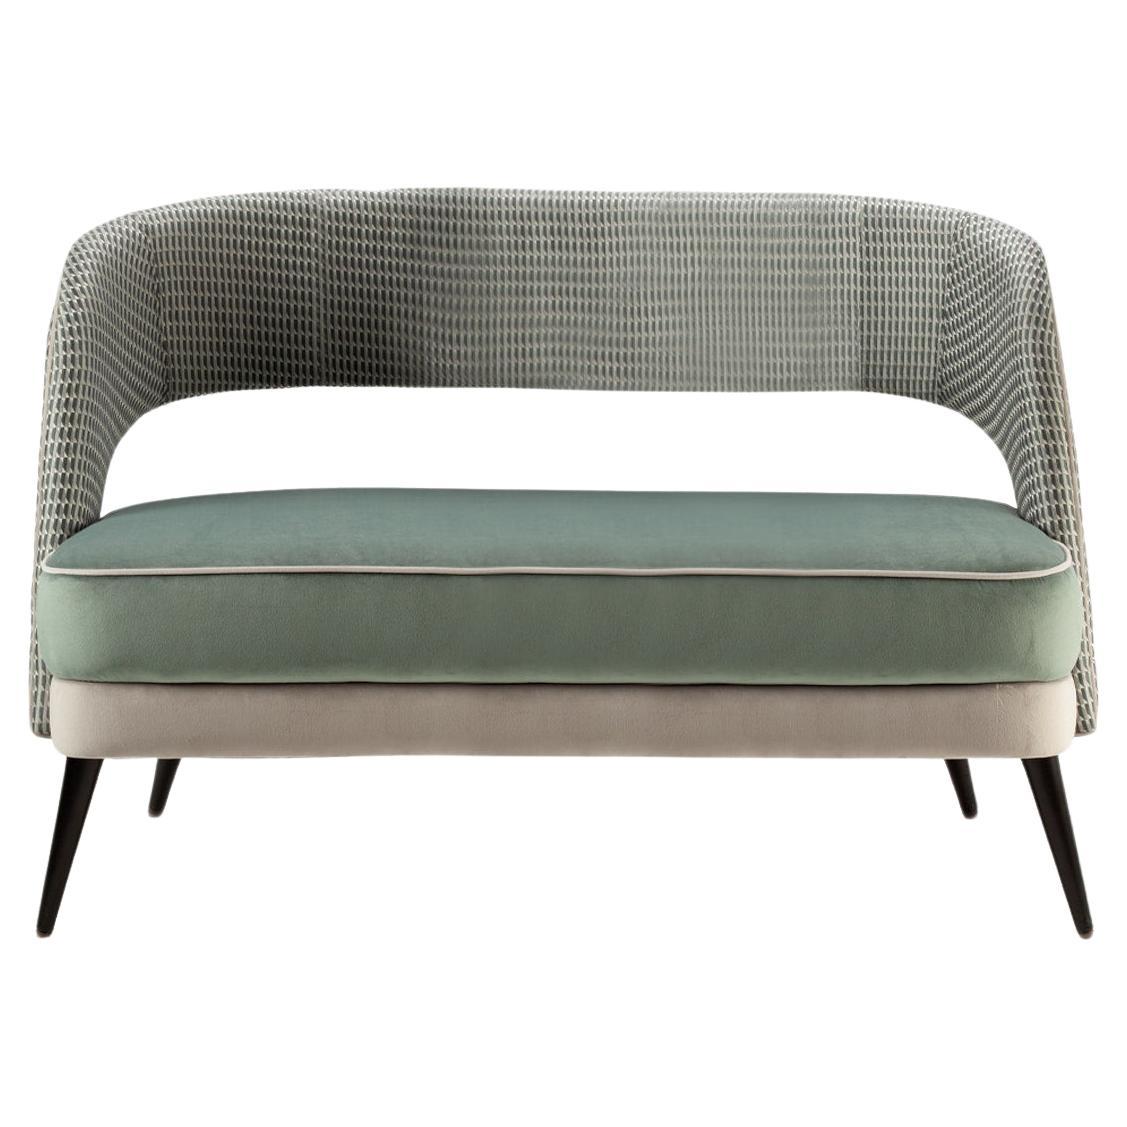 2-Sitzer-Sofa in Seegrün mit strukturierter grauer Rückenlehne und hölzernen Füßen